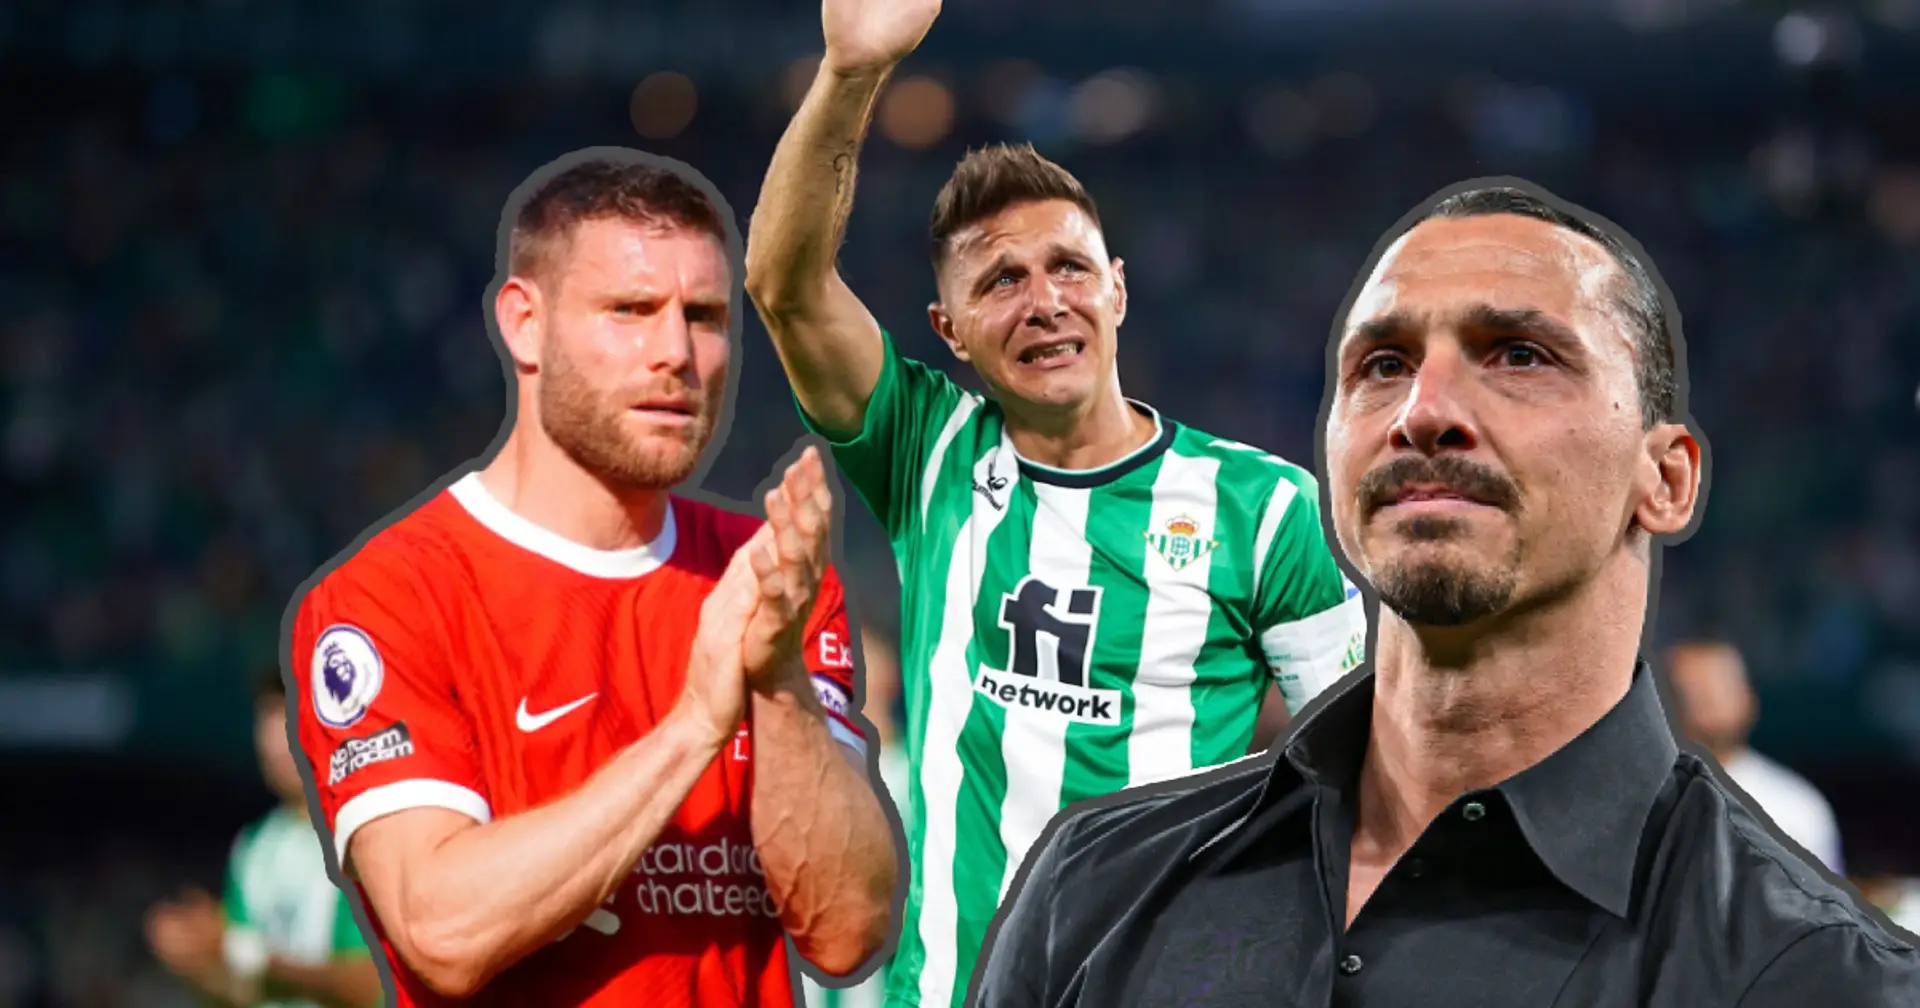 So viele Stars haben sich in den letzten Wochen von ihren Vereinen und ihrer Karriere verabschiedet: Nicht nur Benzema, Zlatan und Leo